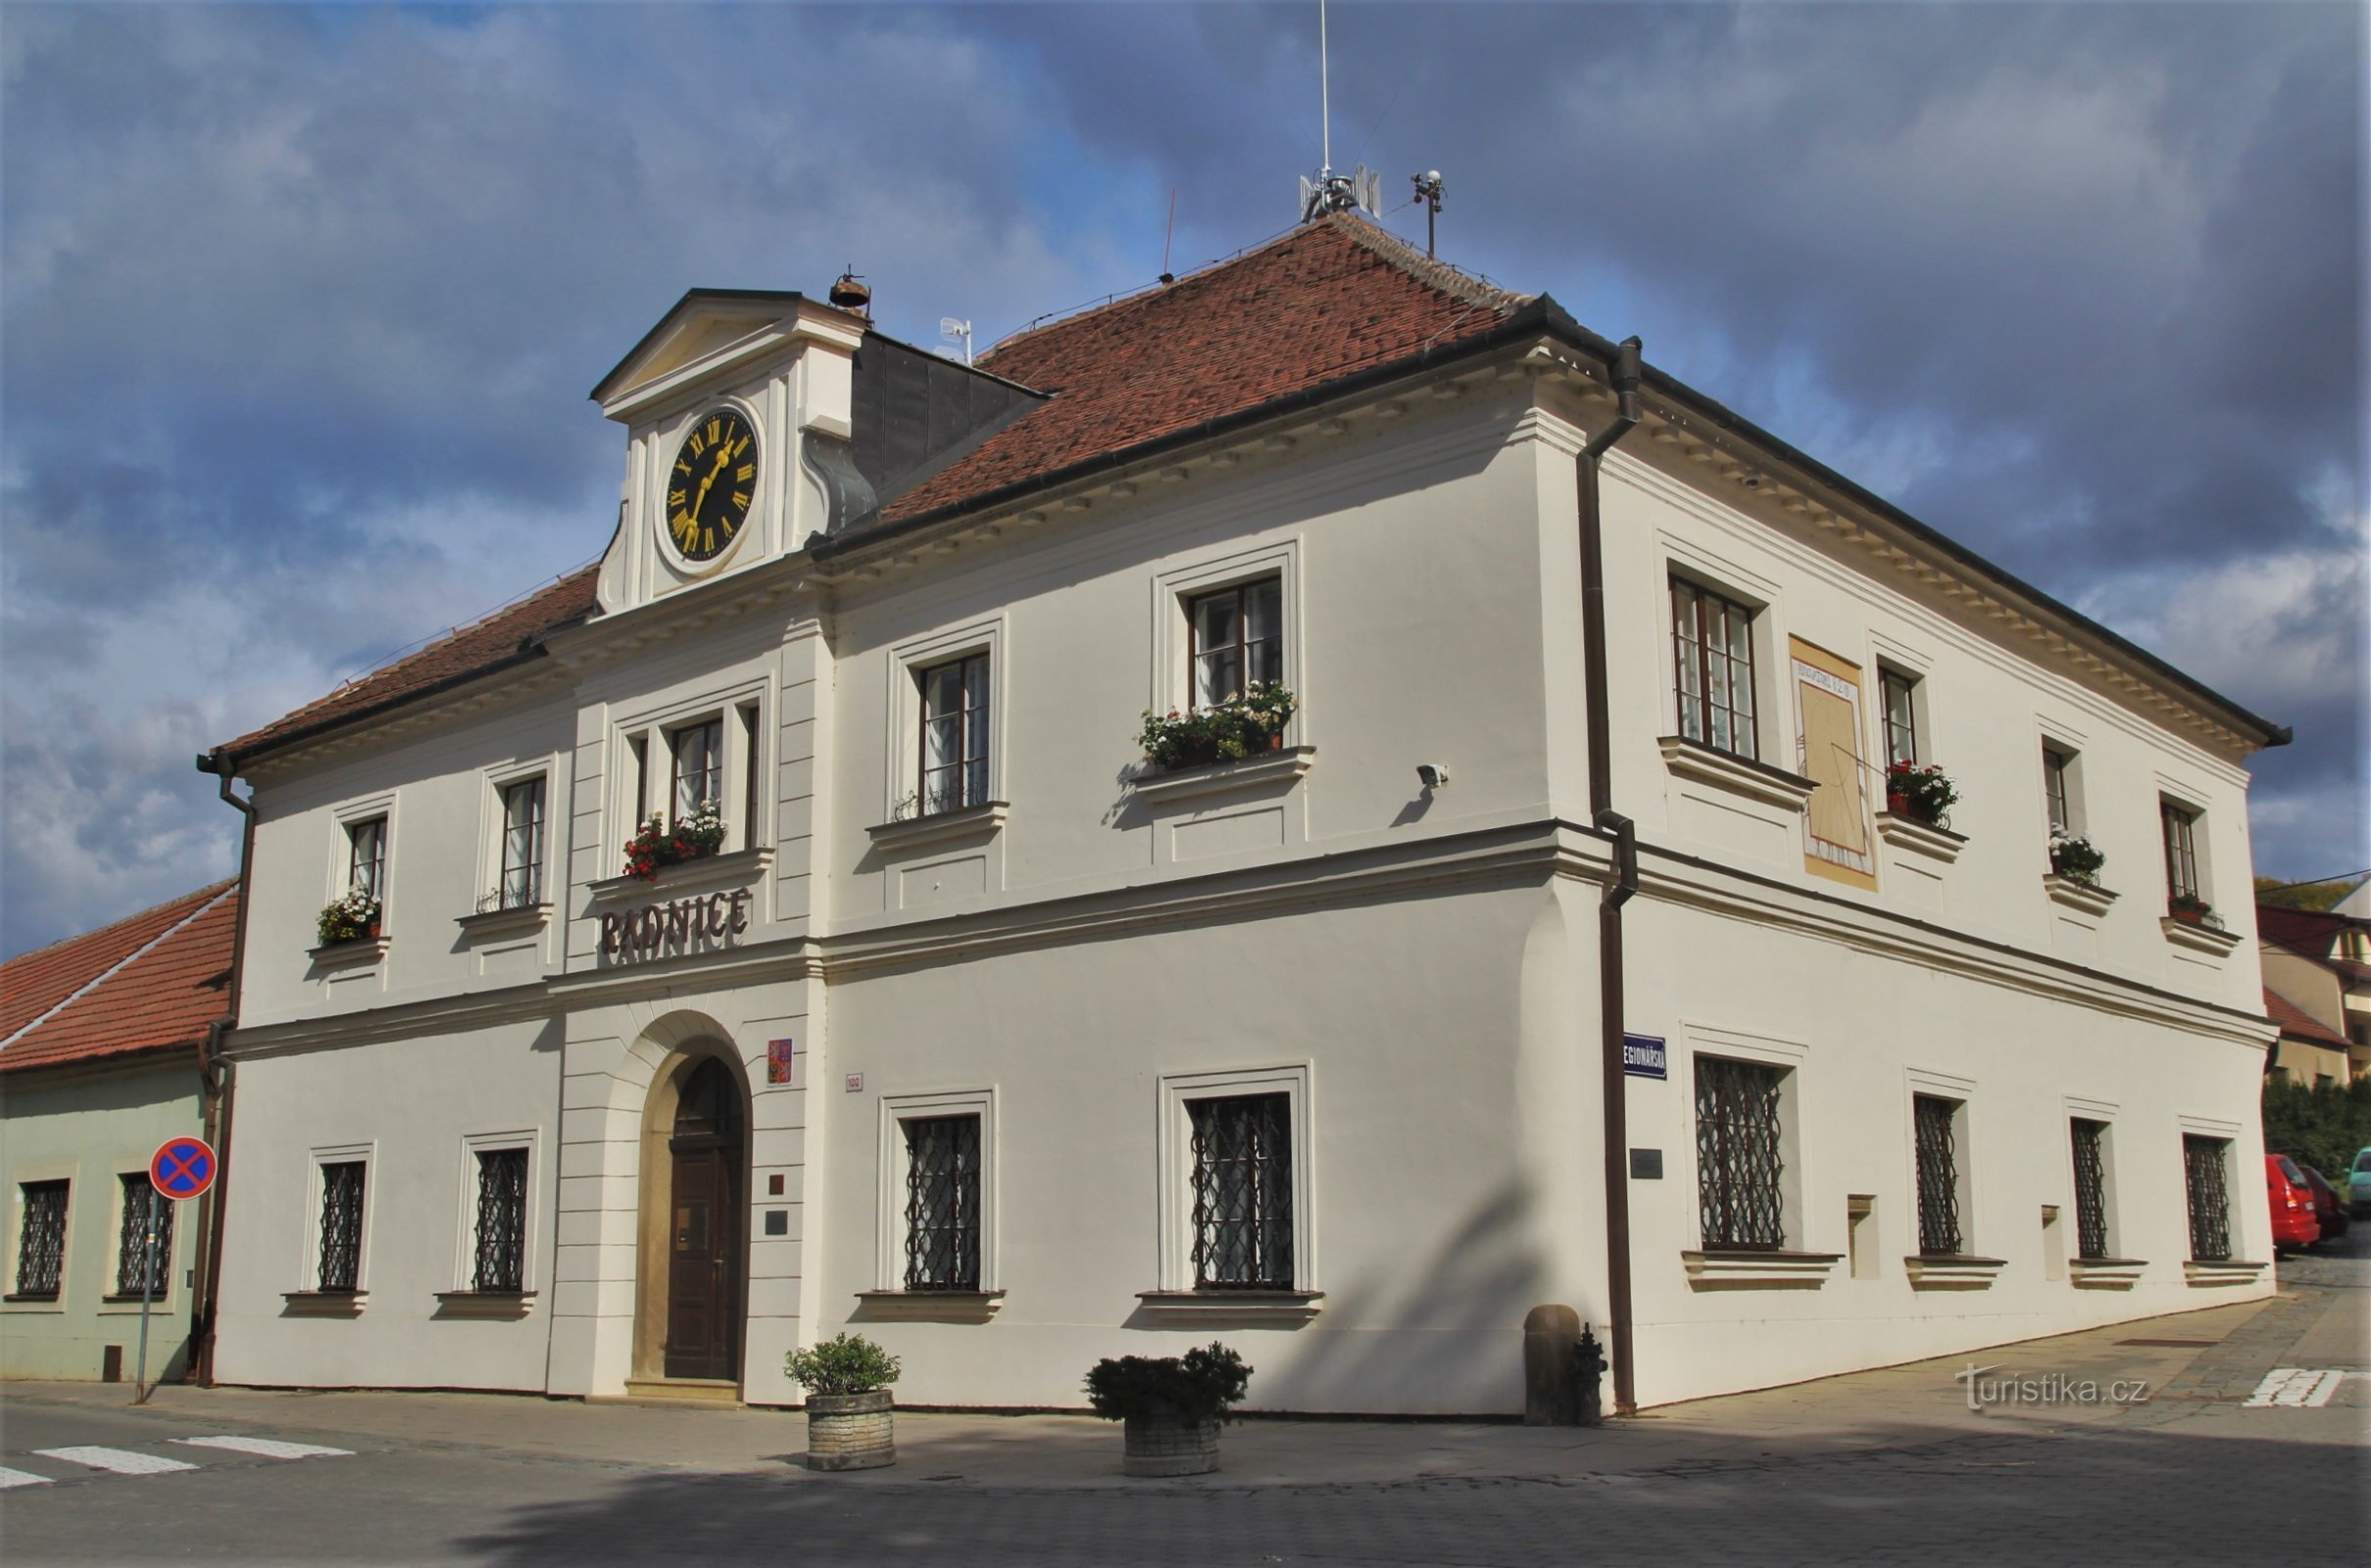 Zgodovinska mestna hiša